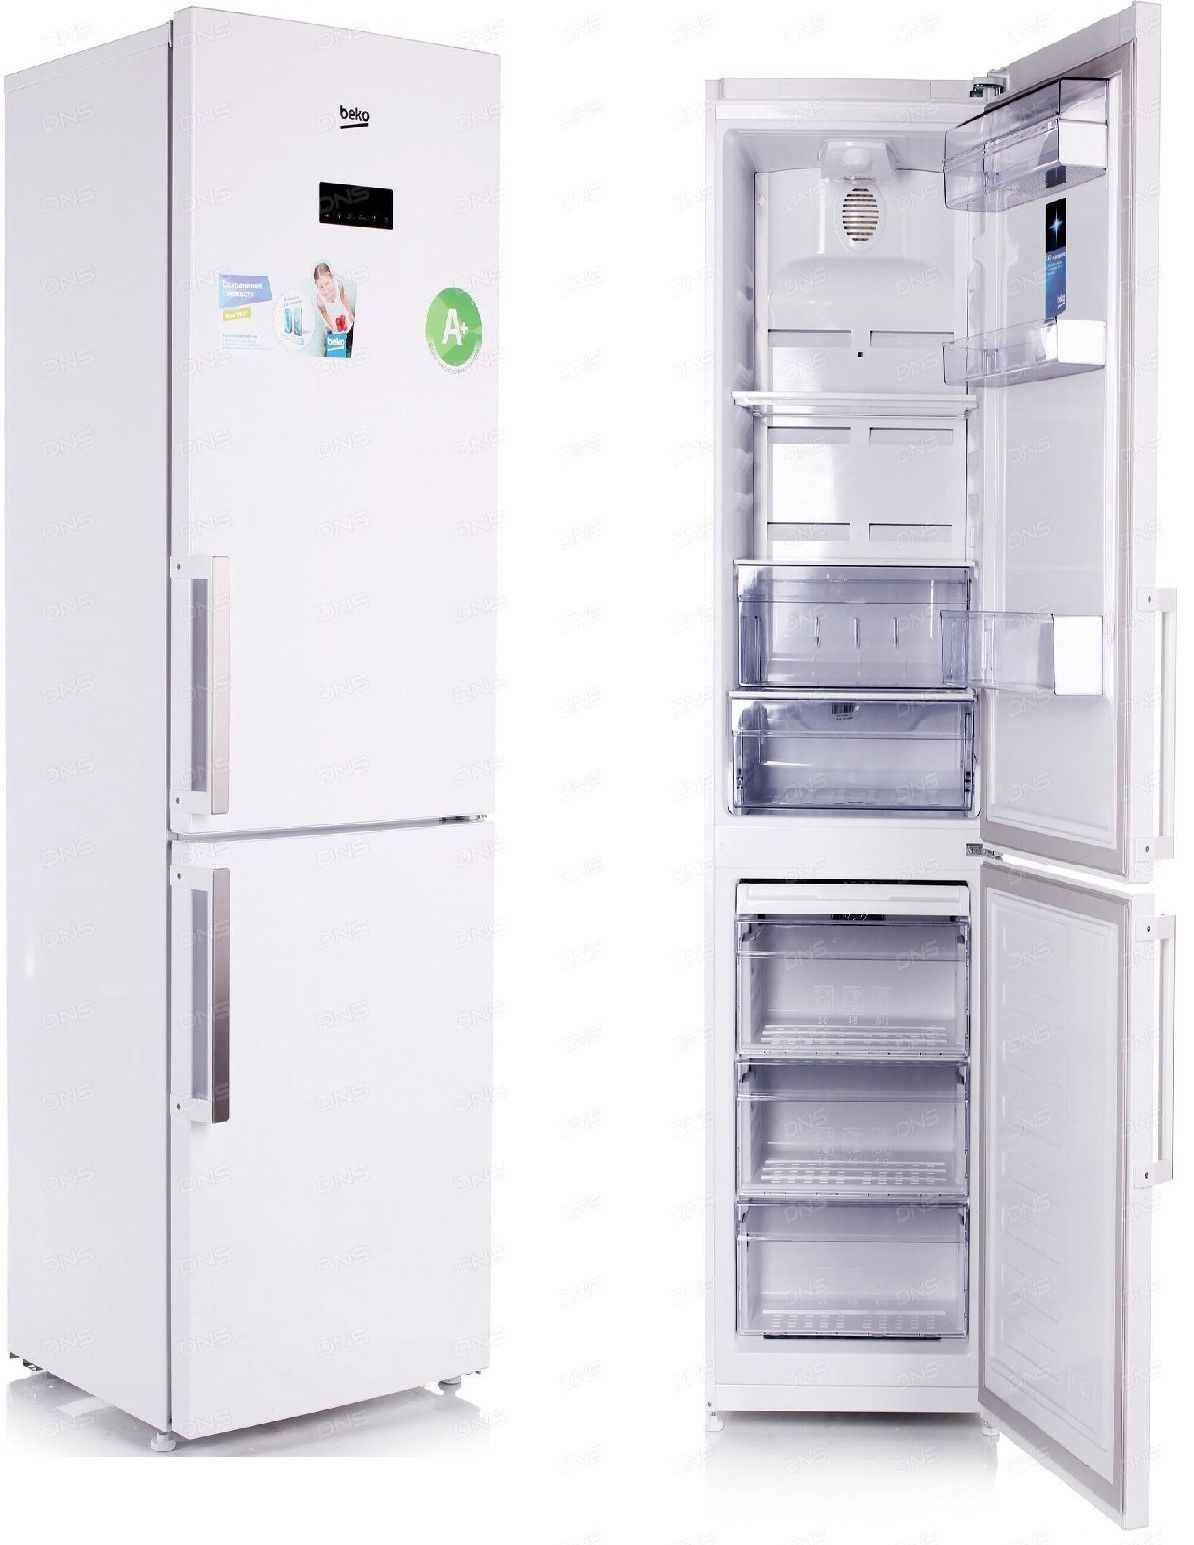 холодильник beko rcnk320k21w, купить в Красноярске холодильник beko rcnk320k21w,  купить в Красноярске дешево холодильник beko rcnk320k21w, купить в Красноярске минимальной цене холодильник beko rcnk320k21w